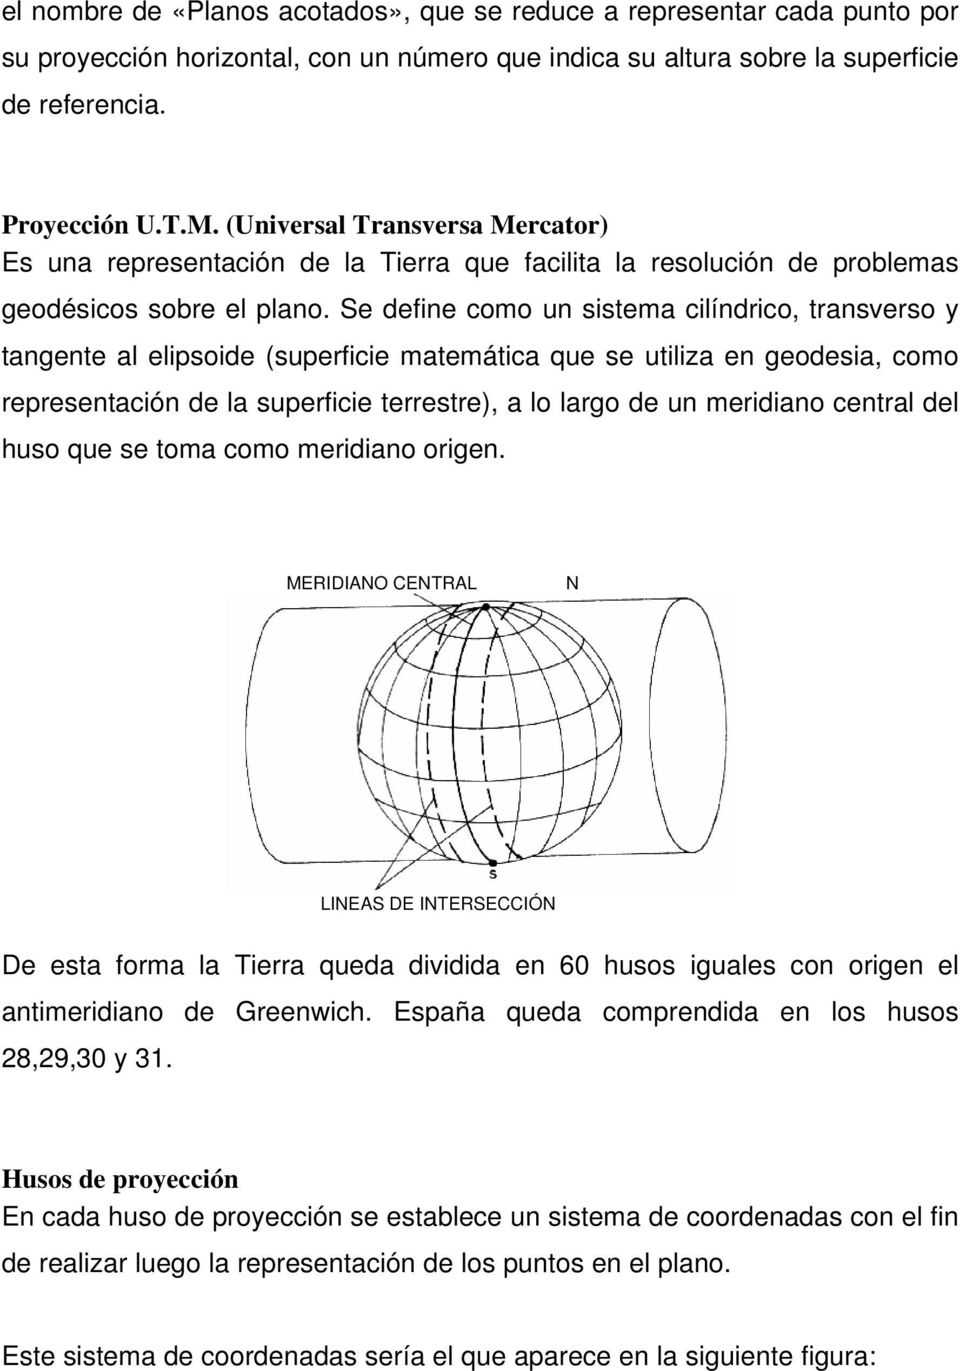 Se define como un sistema cilíndrico, transverso y tangente al elipsoide (superficie matemática que se utiliza en geodesia, como representación de la superficie terrestre), a lo largo de un meridiano